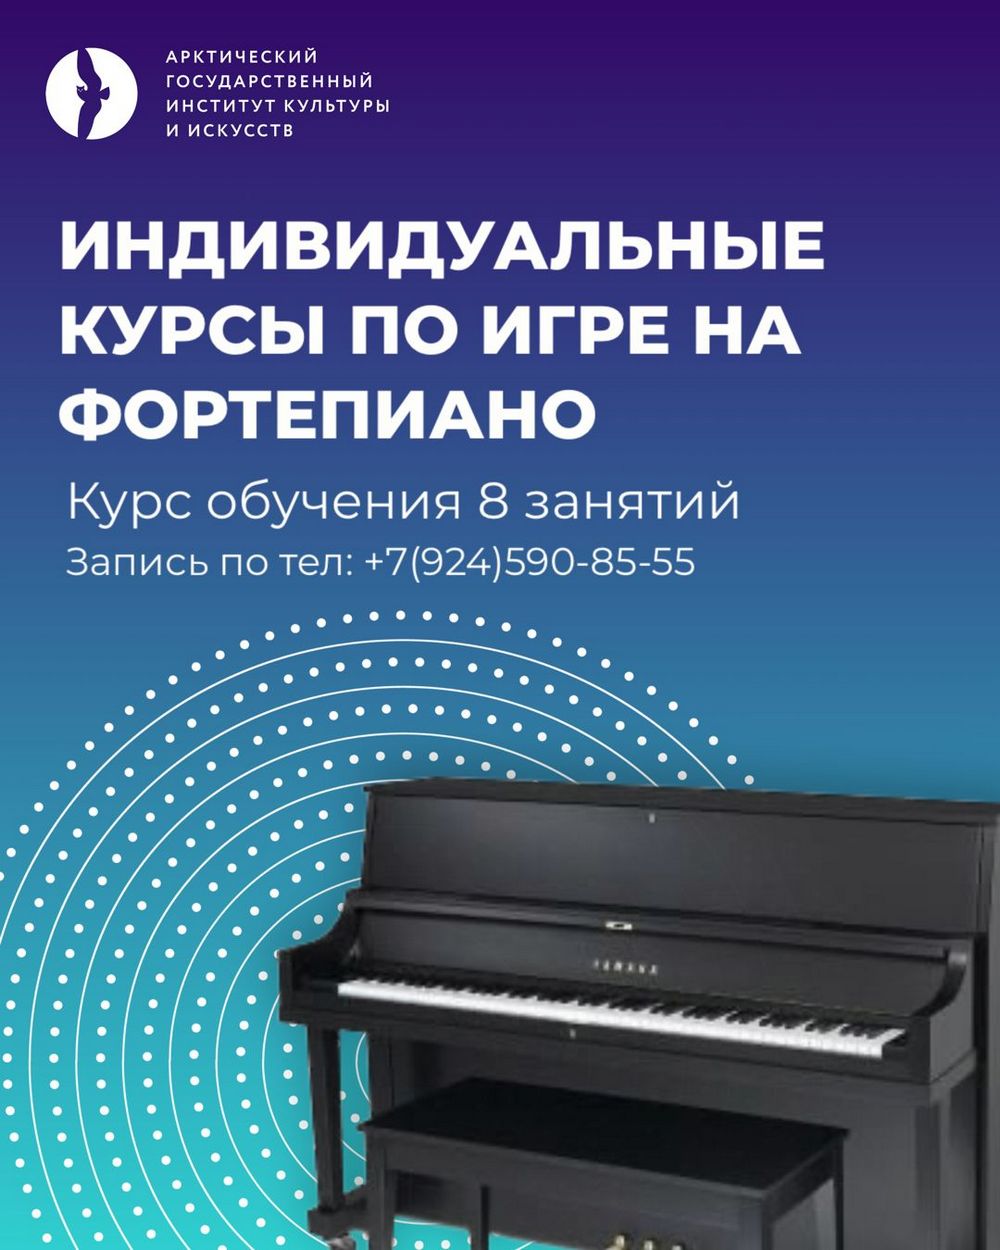 фортепиано